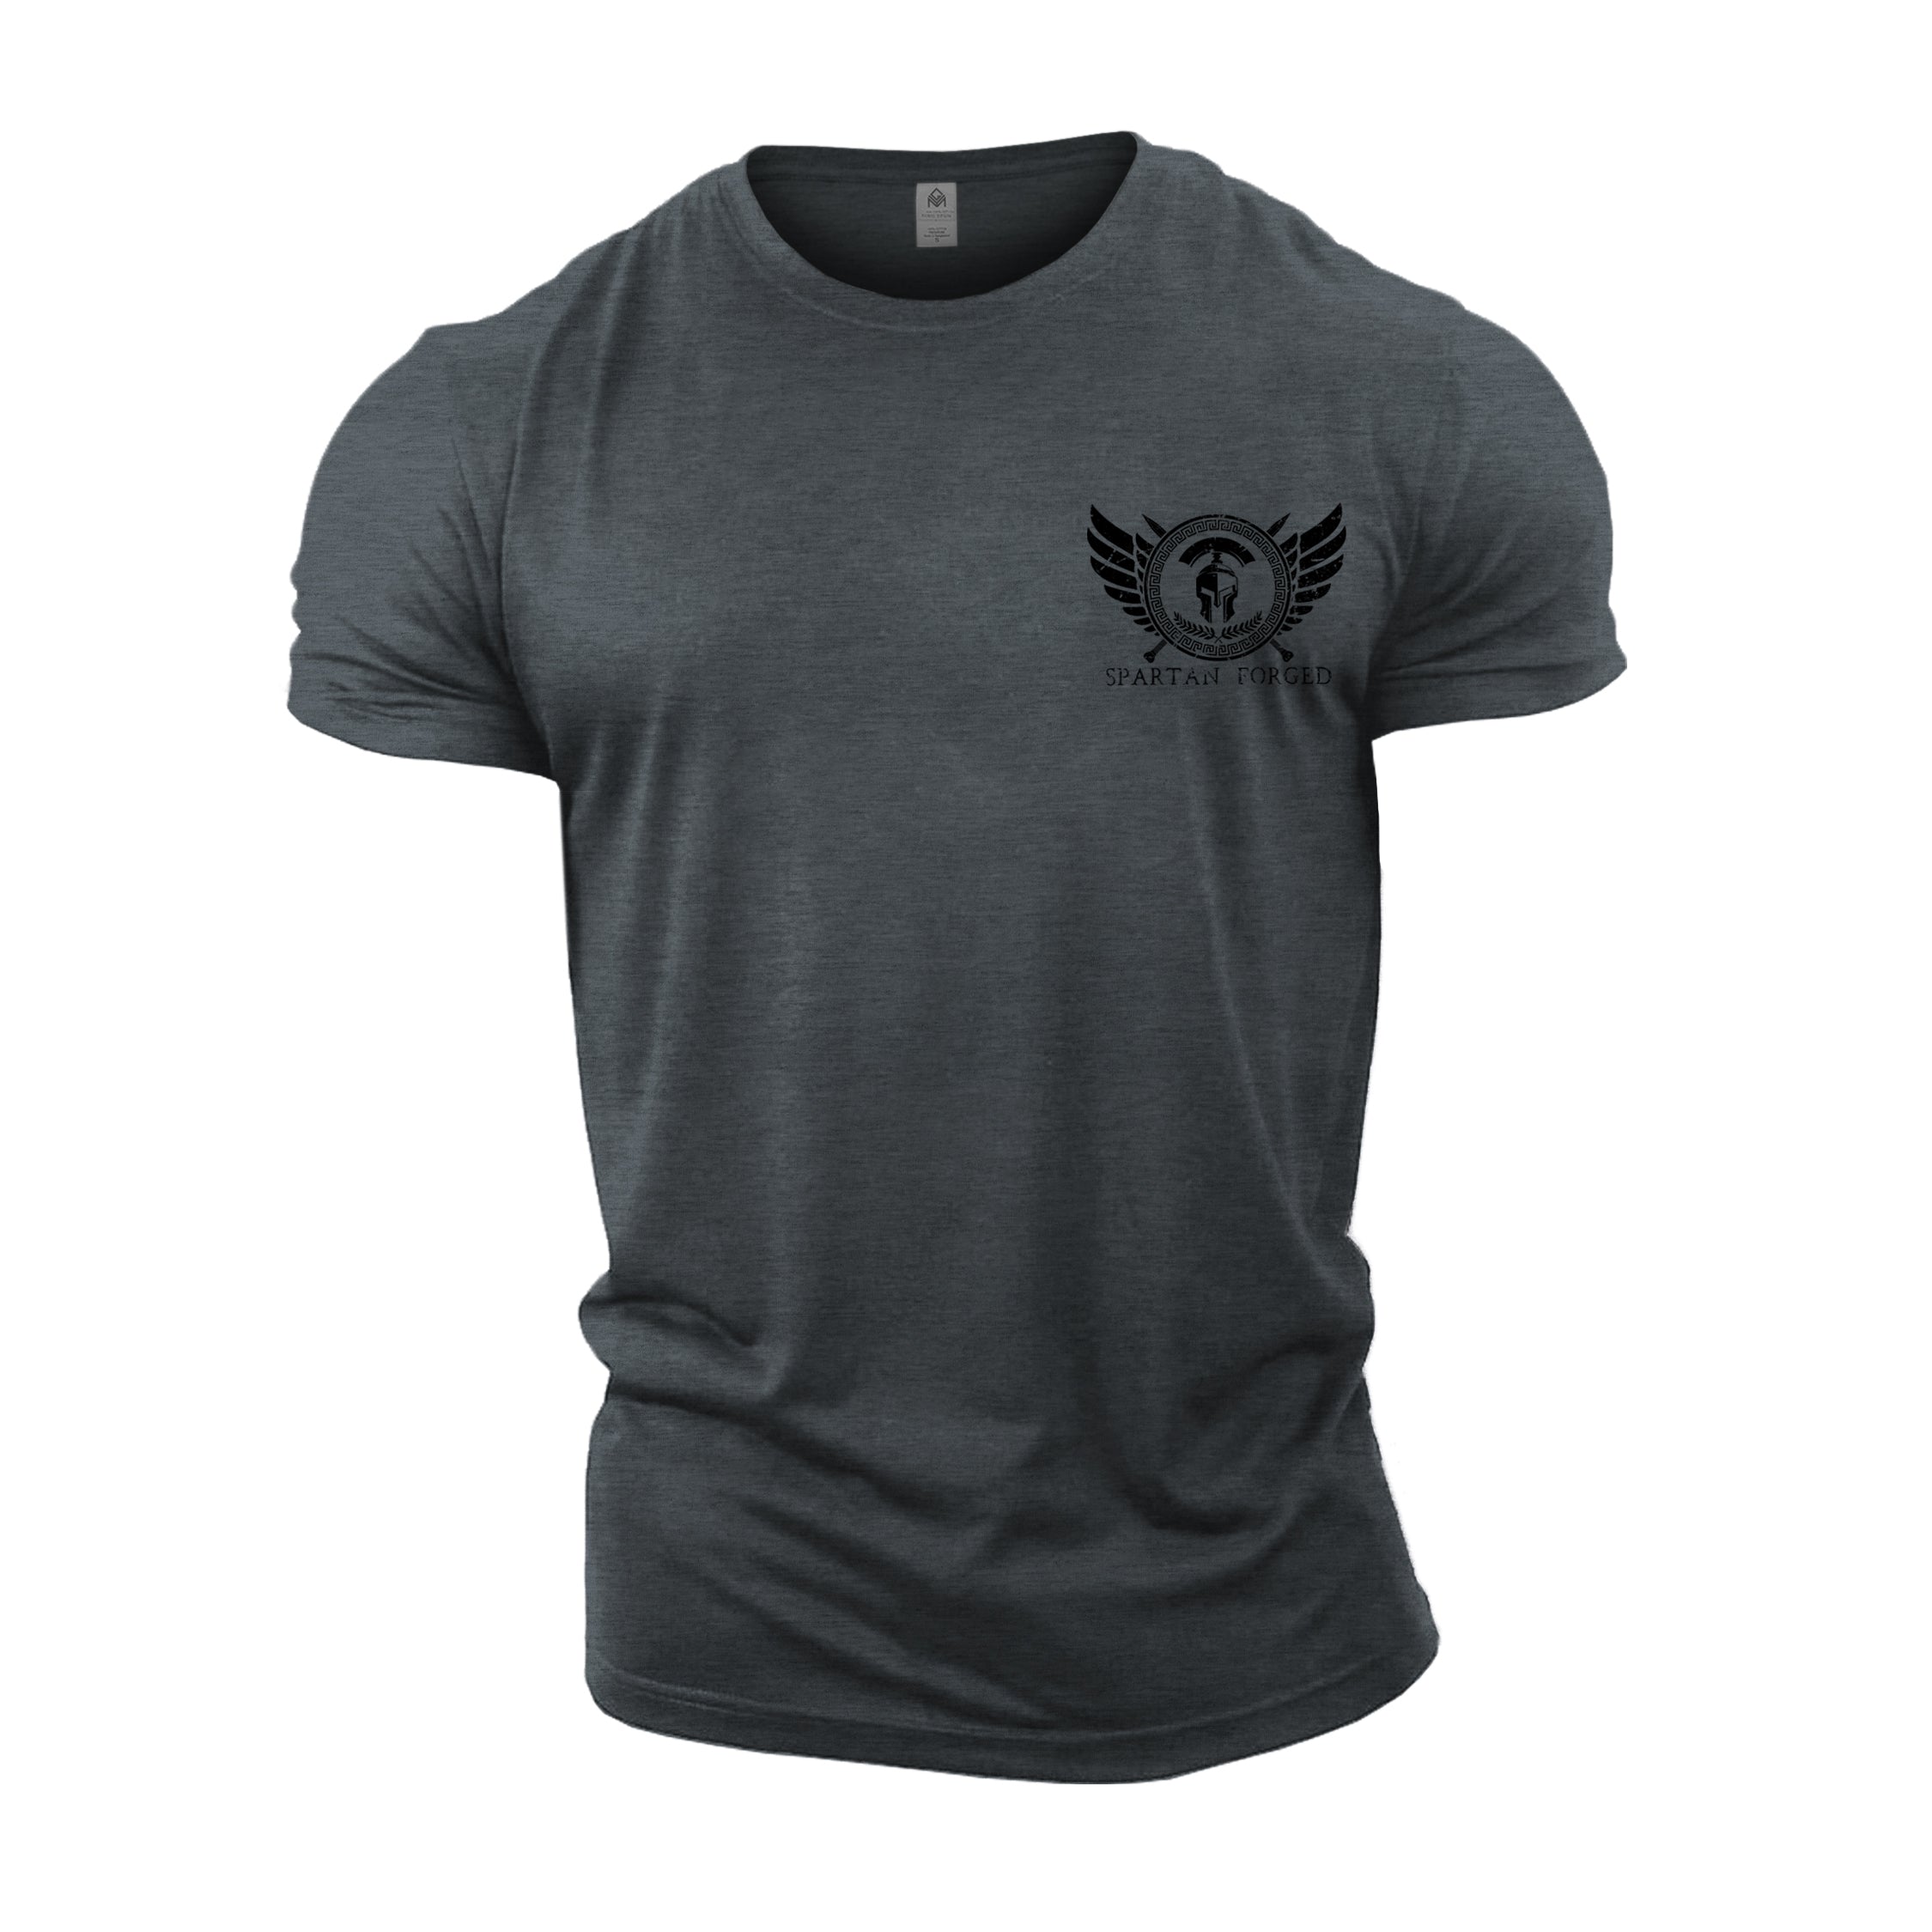 Spartan Forged Logo - Spartan Forged - Gym T-Shirt